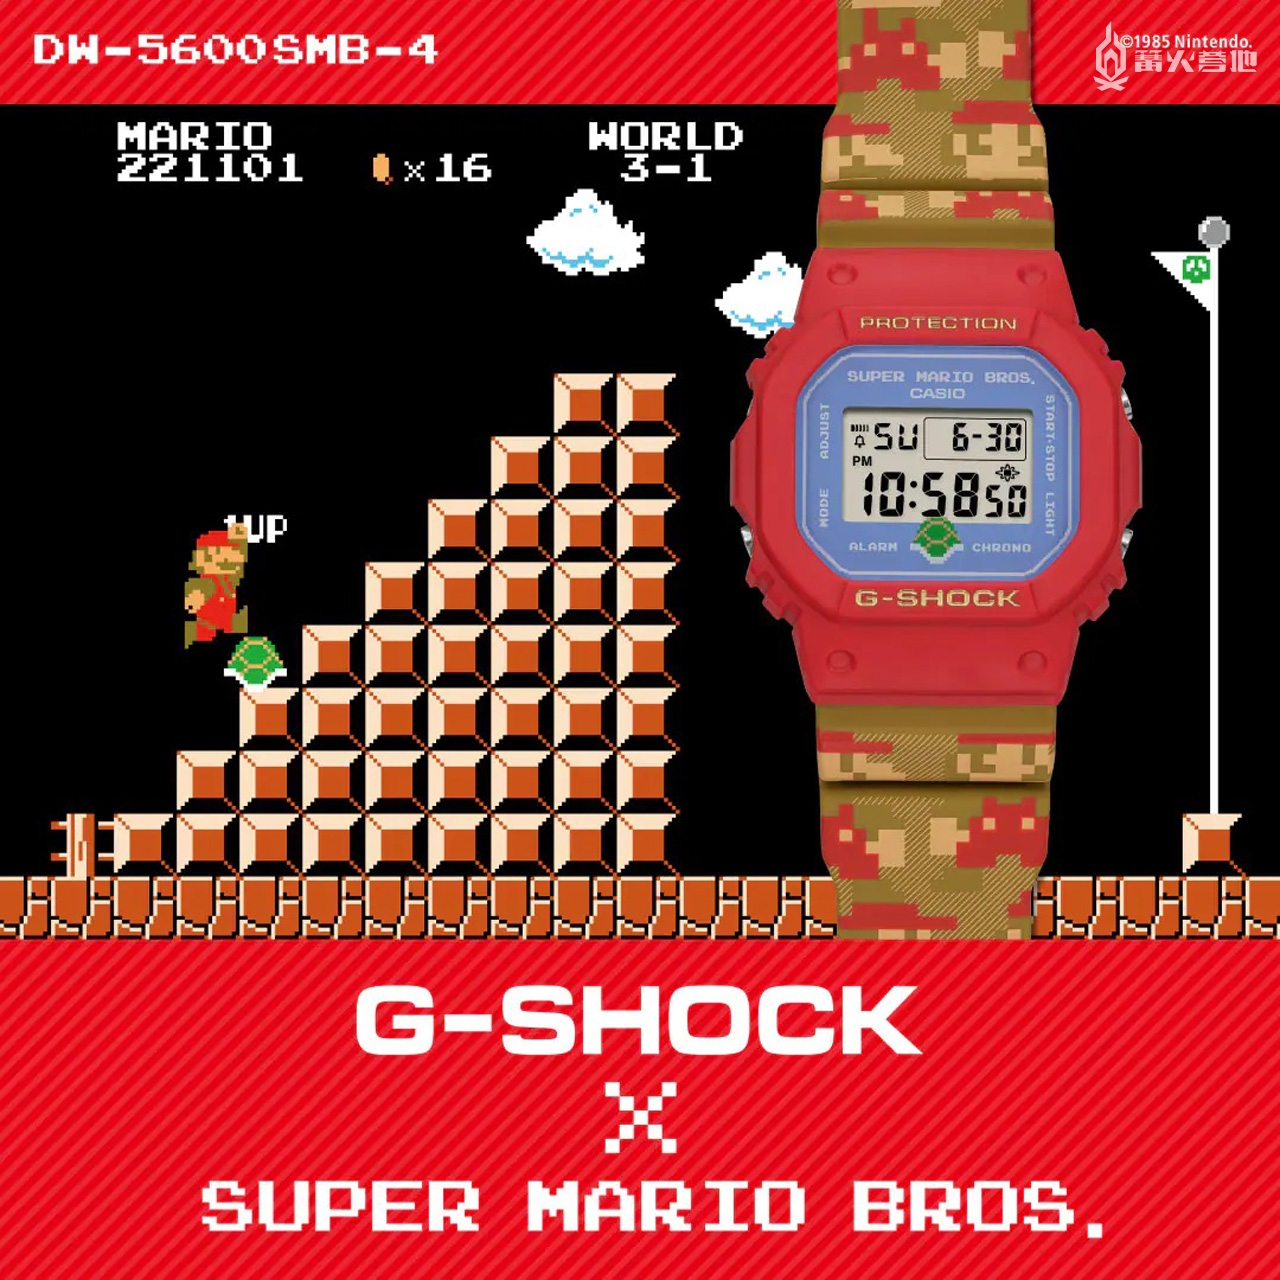 卡西欧「G-SHOCK」将推出《超级马力欧兄弟》合作款电子表